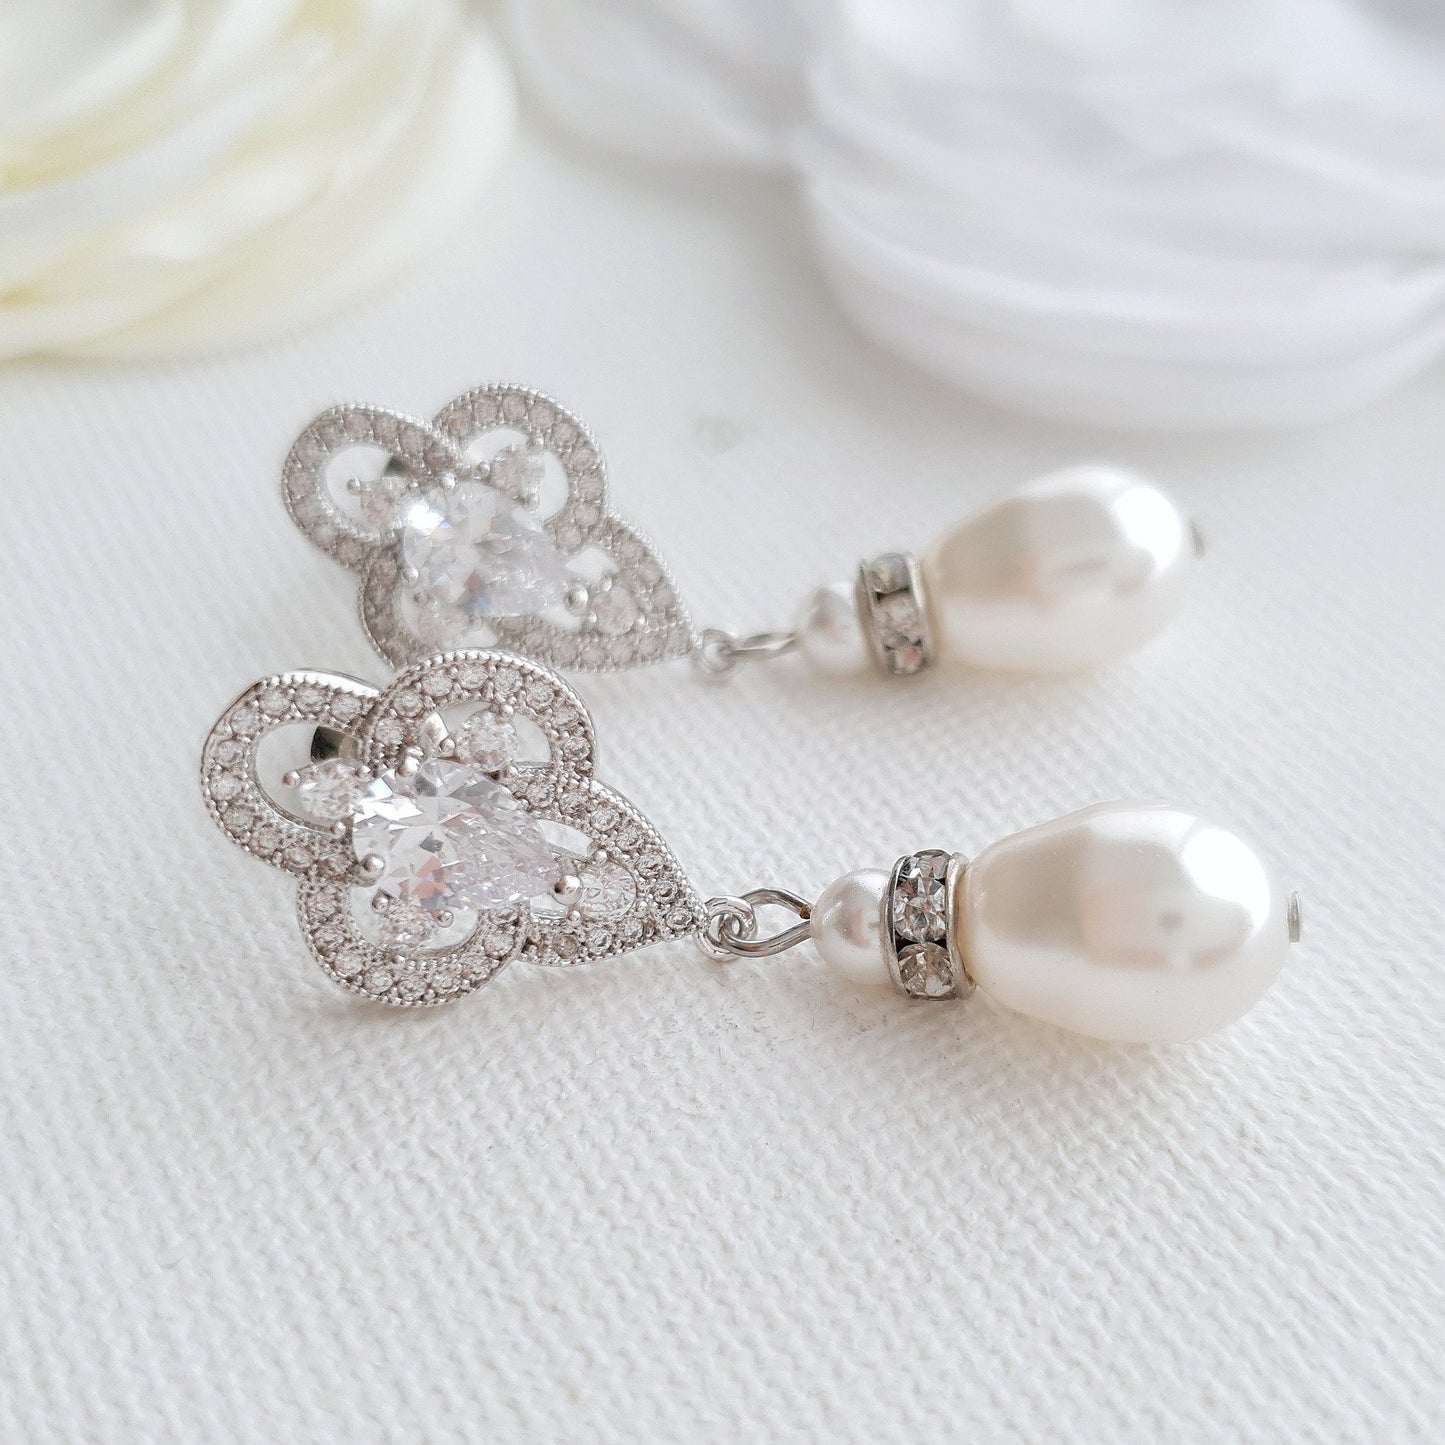 Pearl Drop Earrings, Bridal Earrings, Crystal Wedding Earrings, Bridesmaids Earrings, CZ Pearl Earrings, Pearl Wedding Jewelry, Mabel